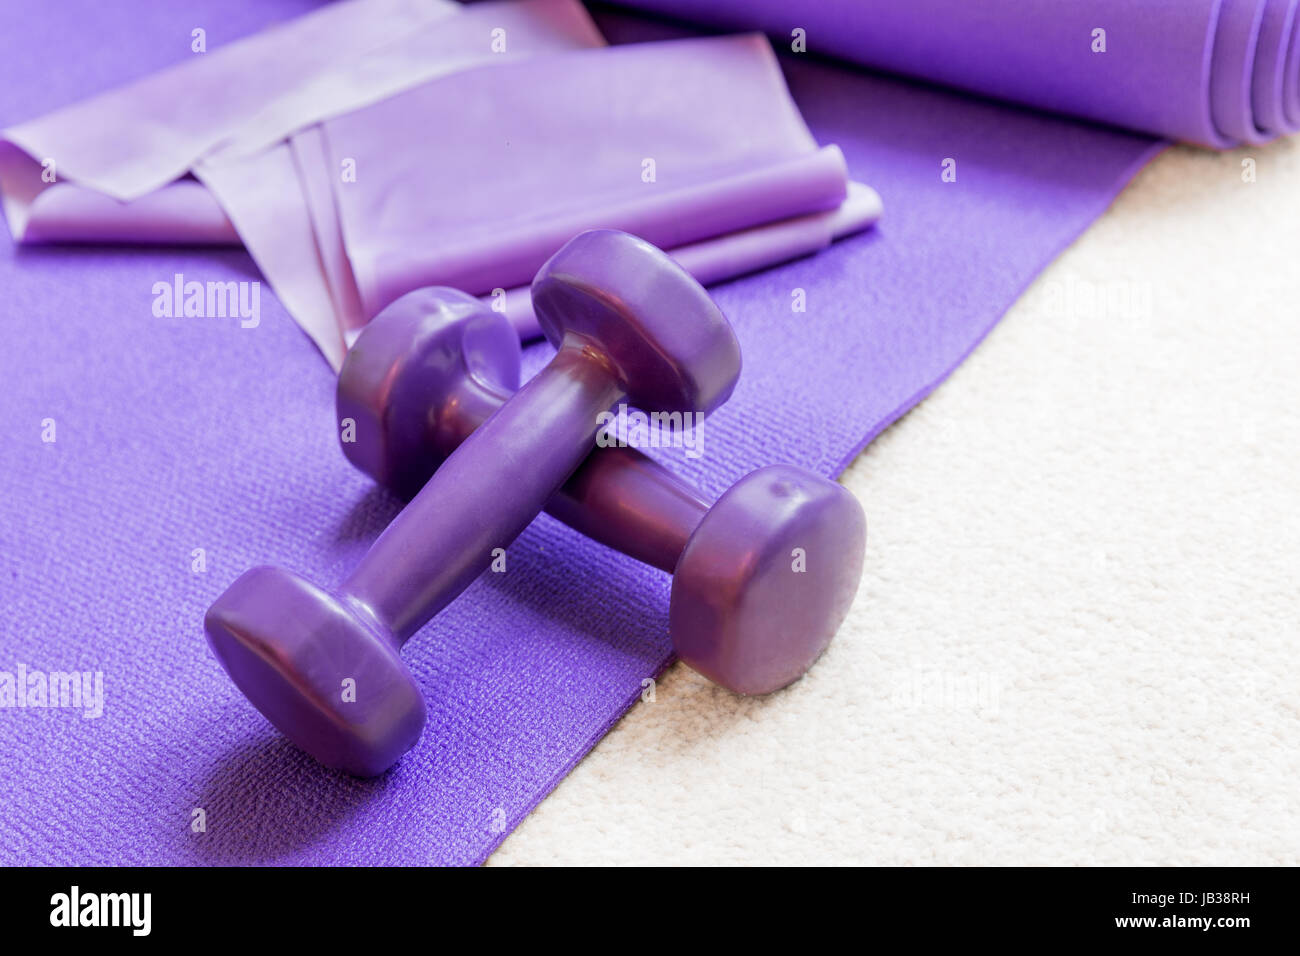 L'équipement pilates yoga Fitness accessoires sur un tapis Banque D'Images